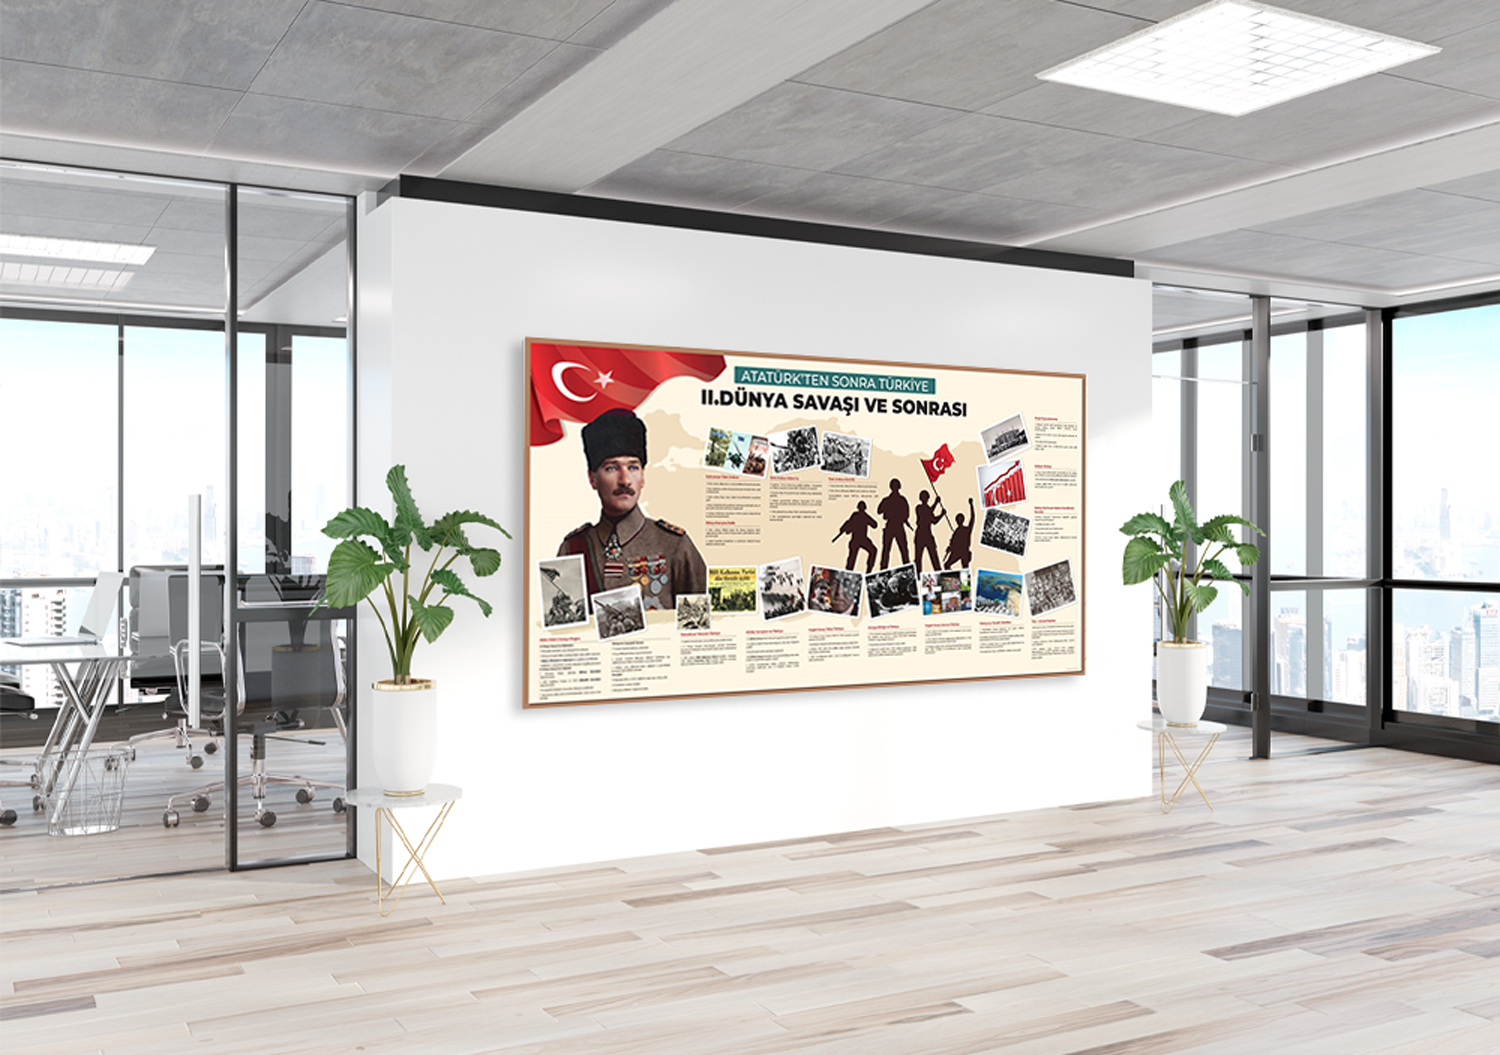 Atatürk’ten Sonra 2. Dünya Savaşı ve Sonrası Okul Posteri